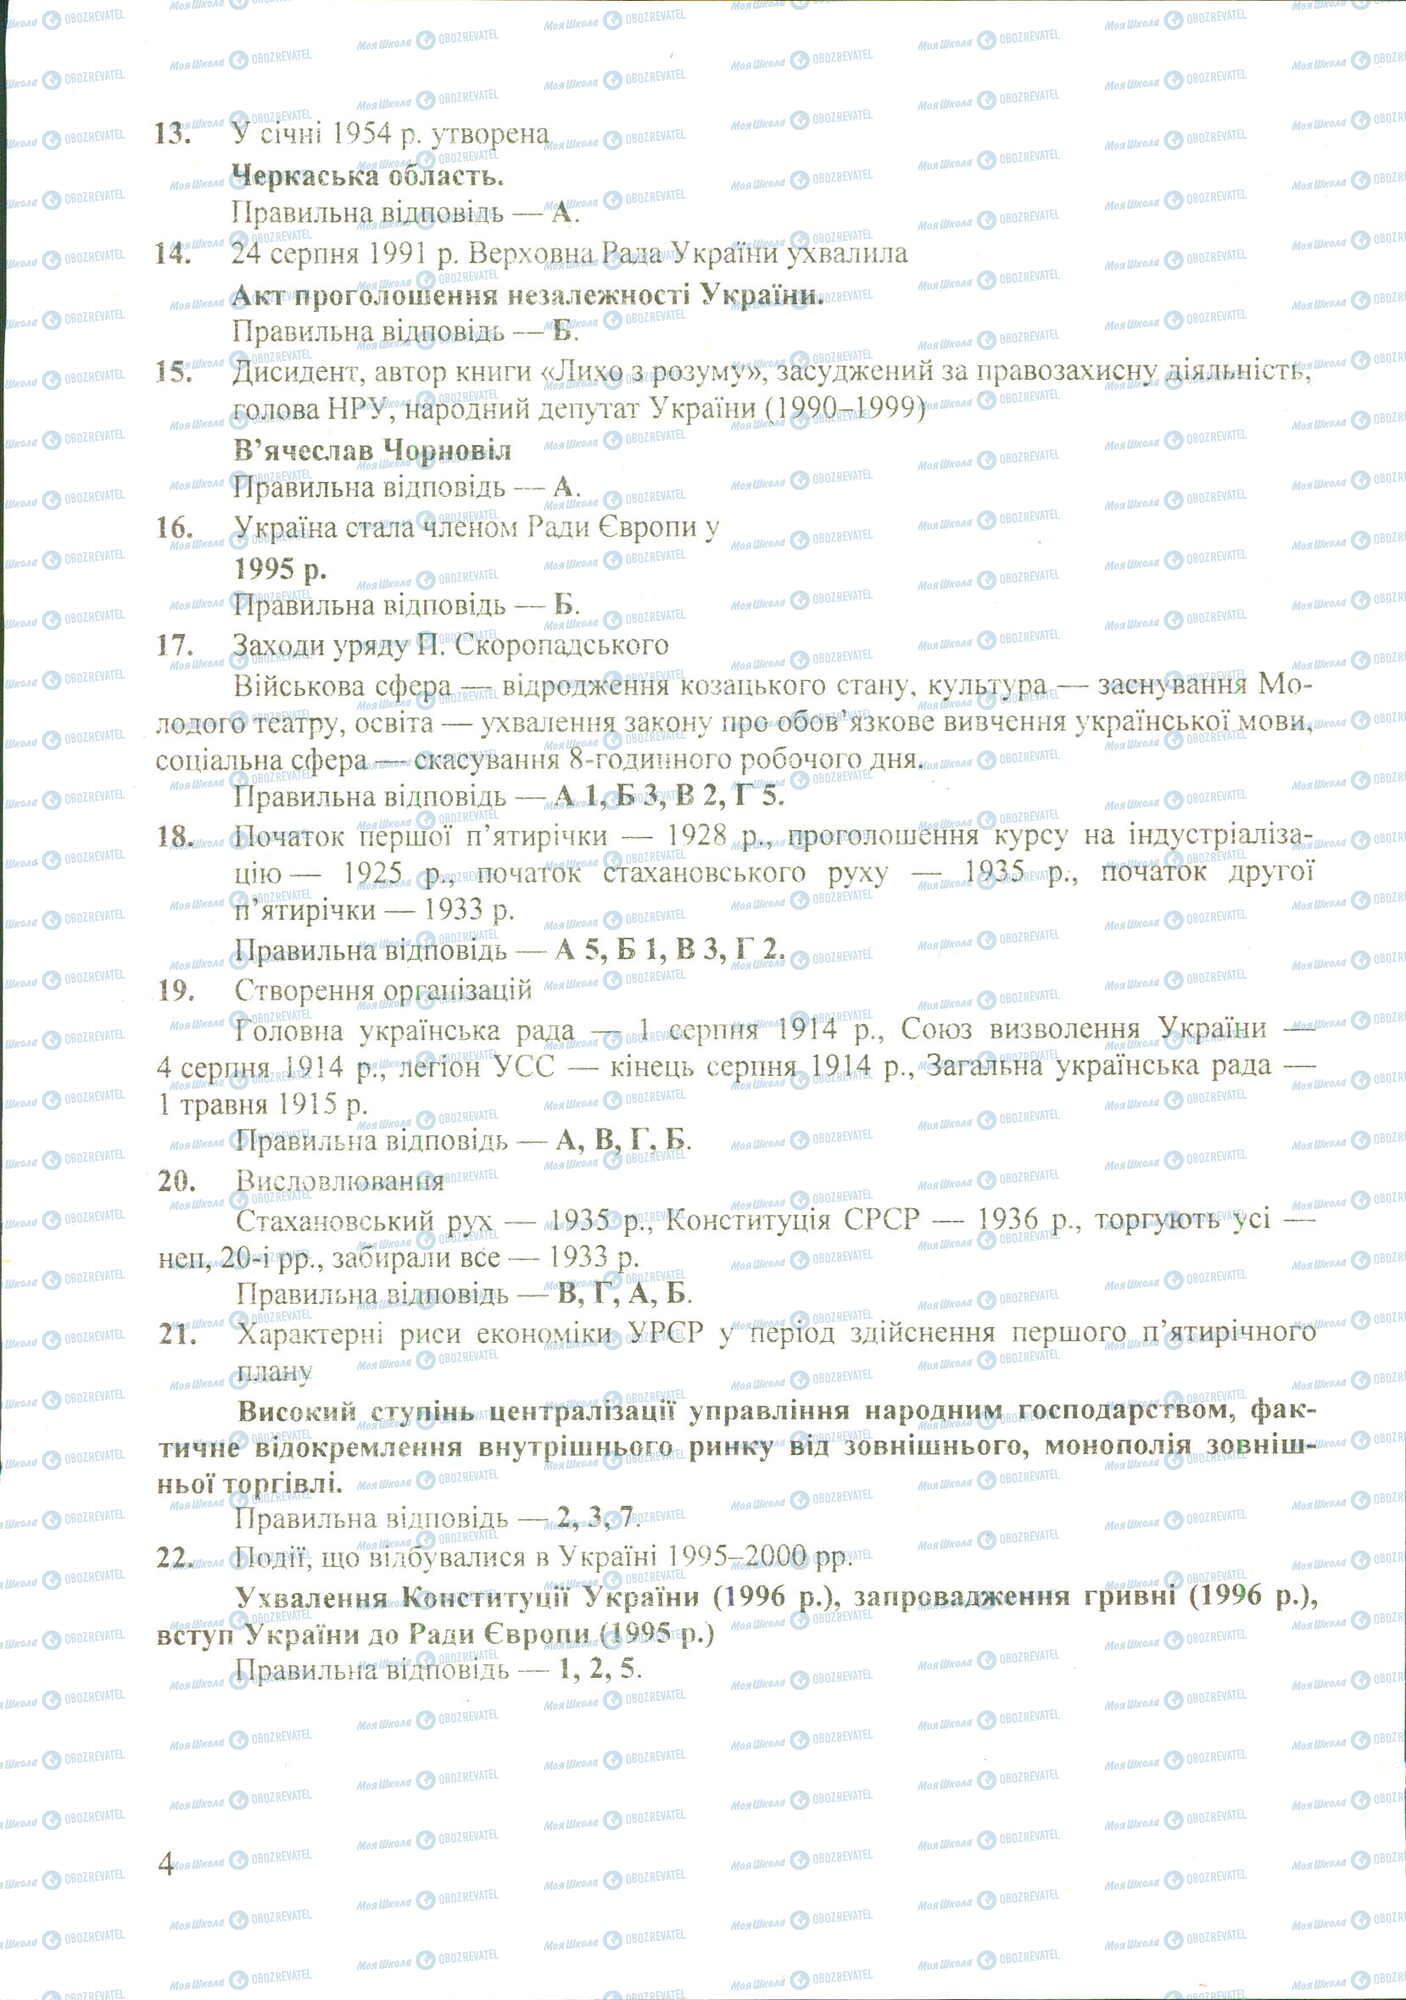 ДПА История Украины 11 класс страница image0000017B